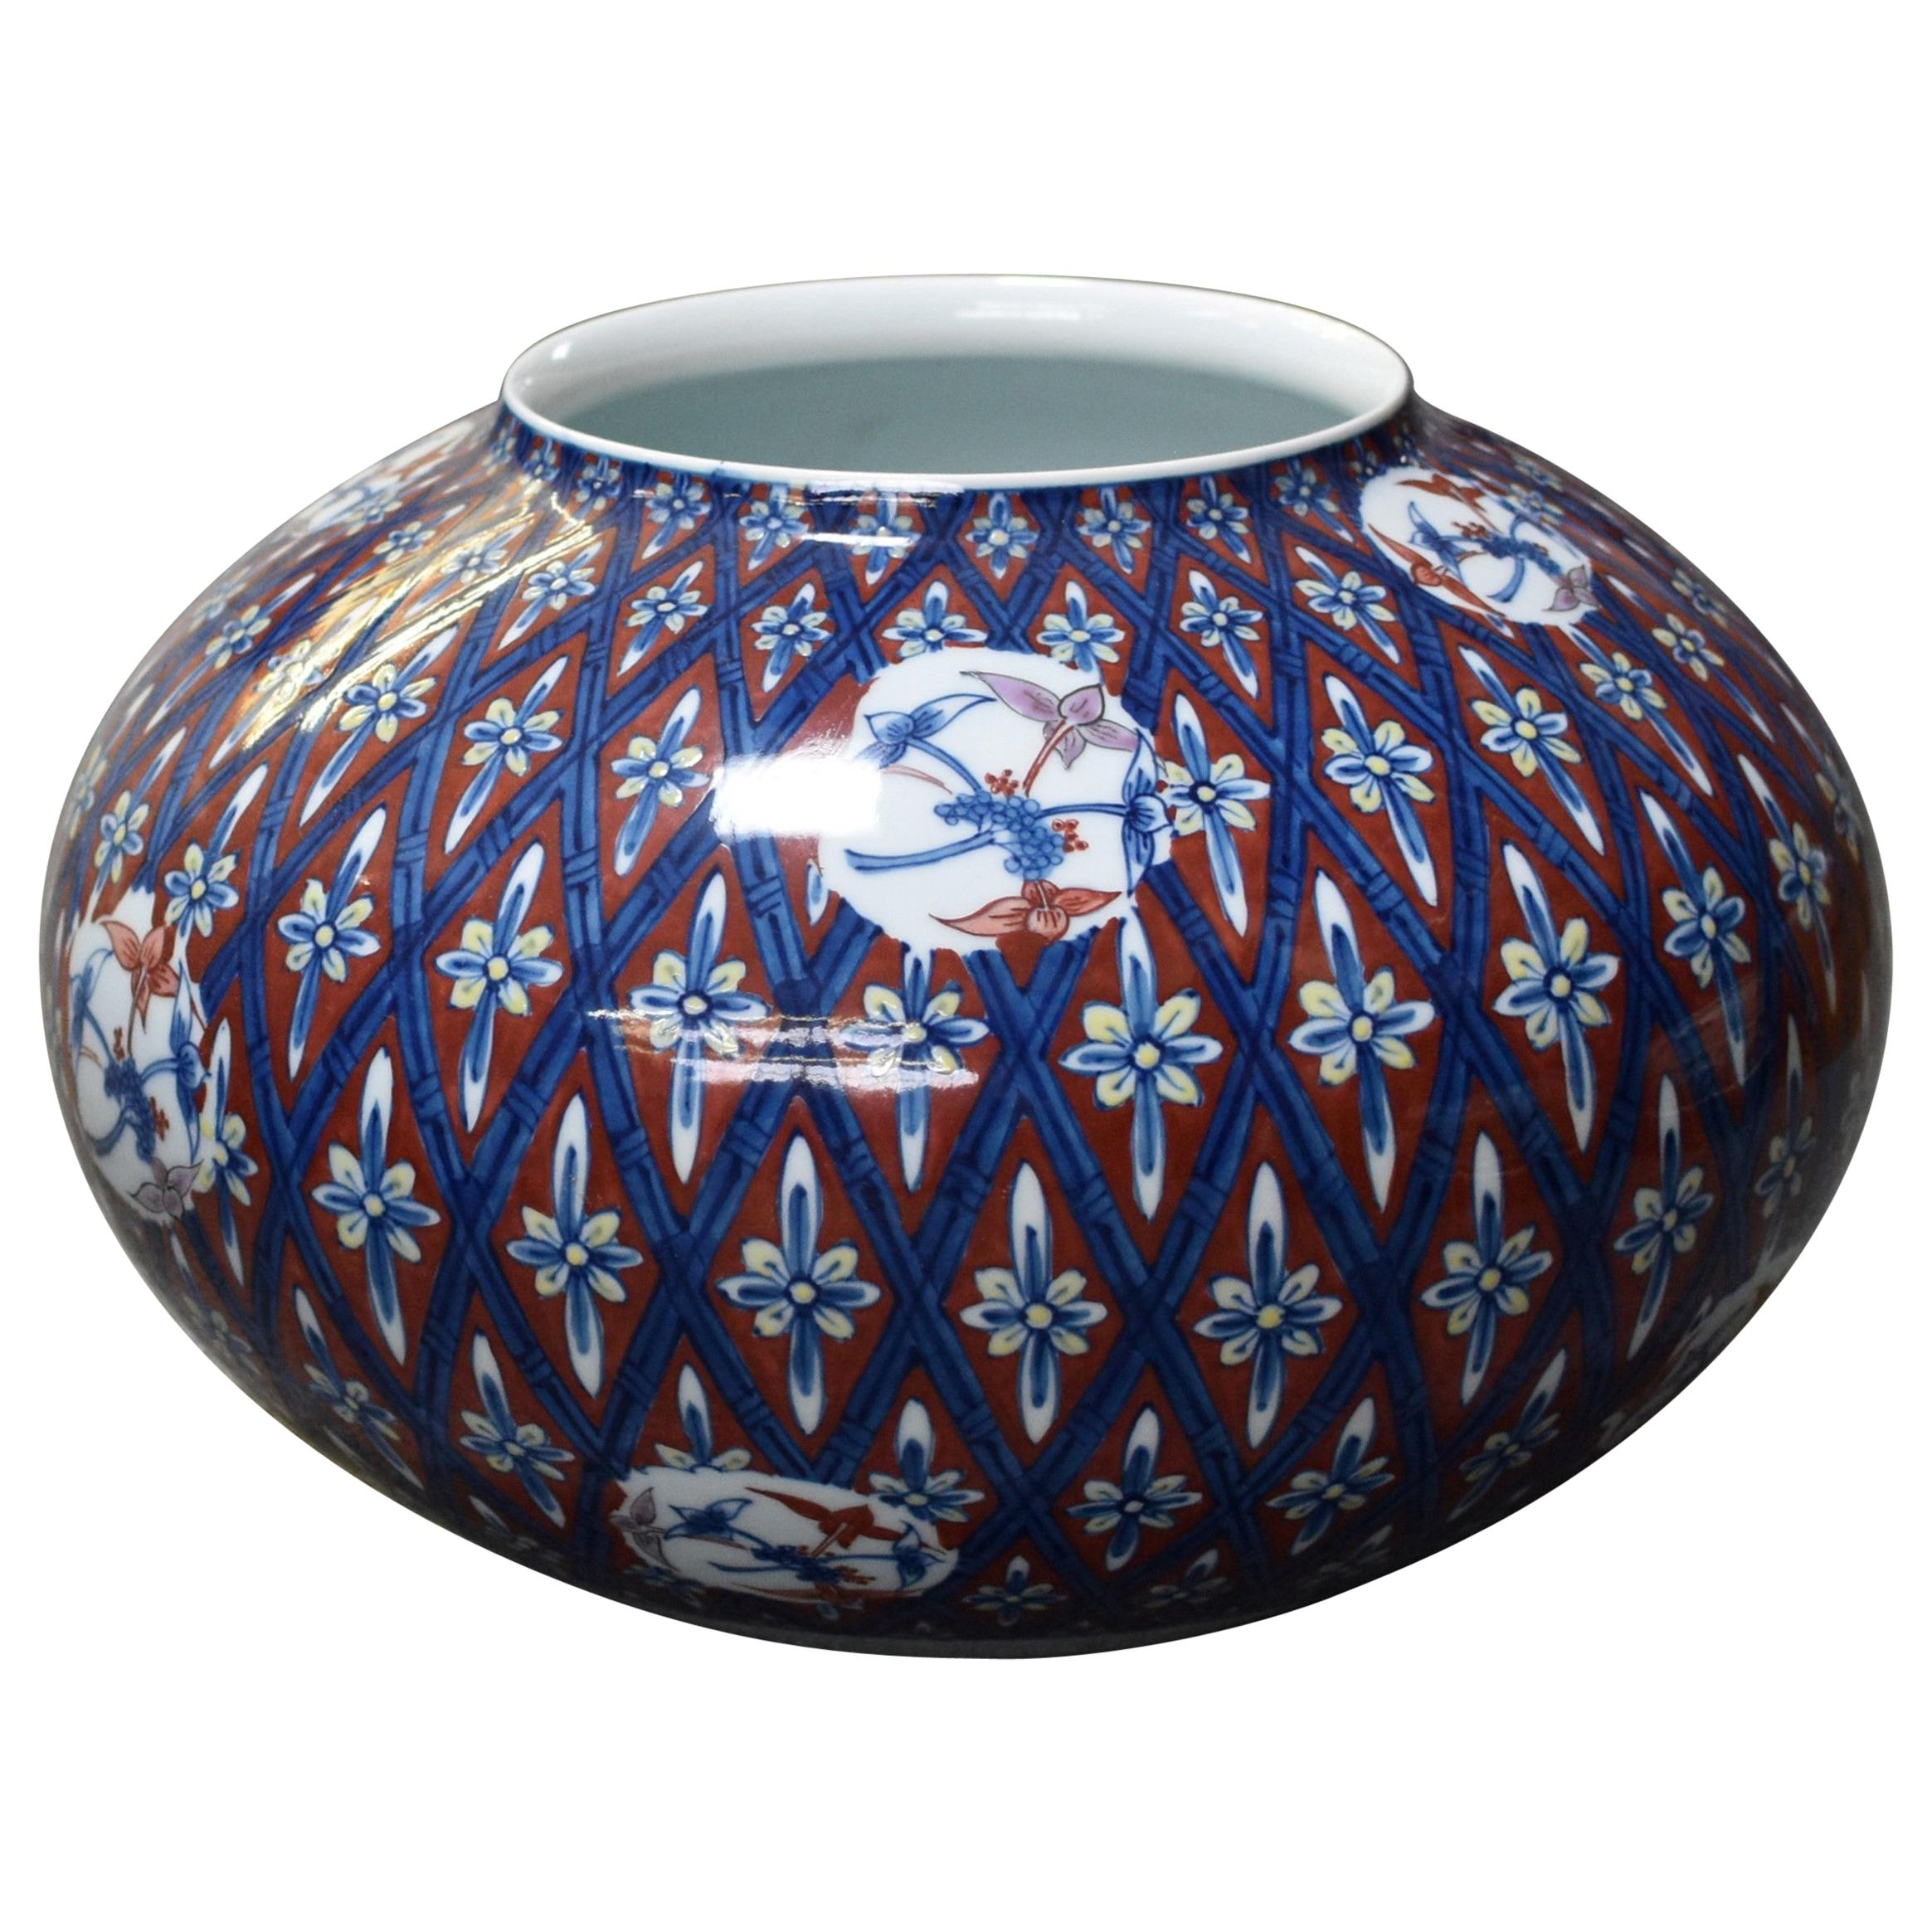 Vase japonais contemporain en porcelaine bleu, rouge et blanc par un maître artiste, 3 pièces